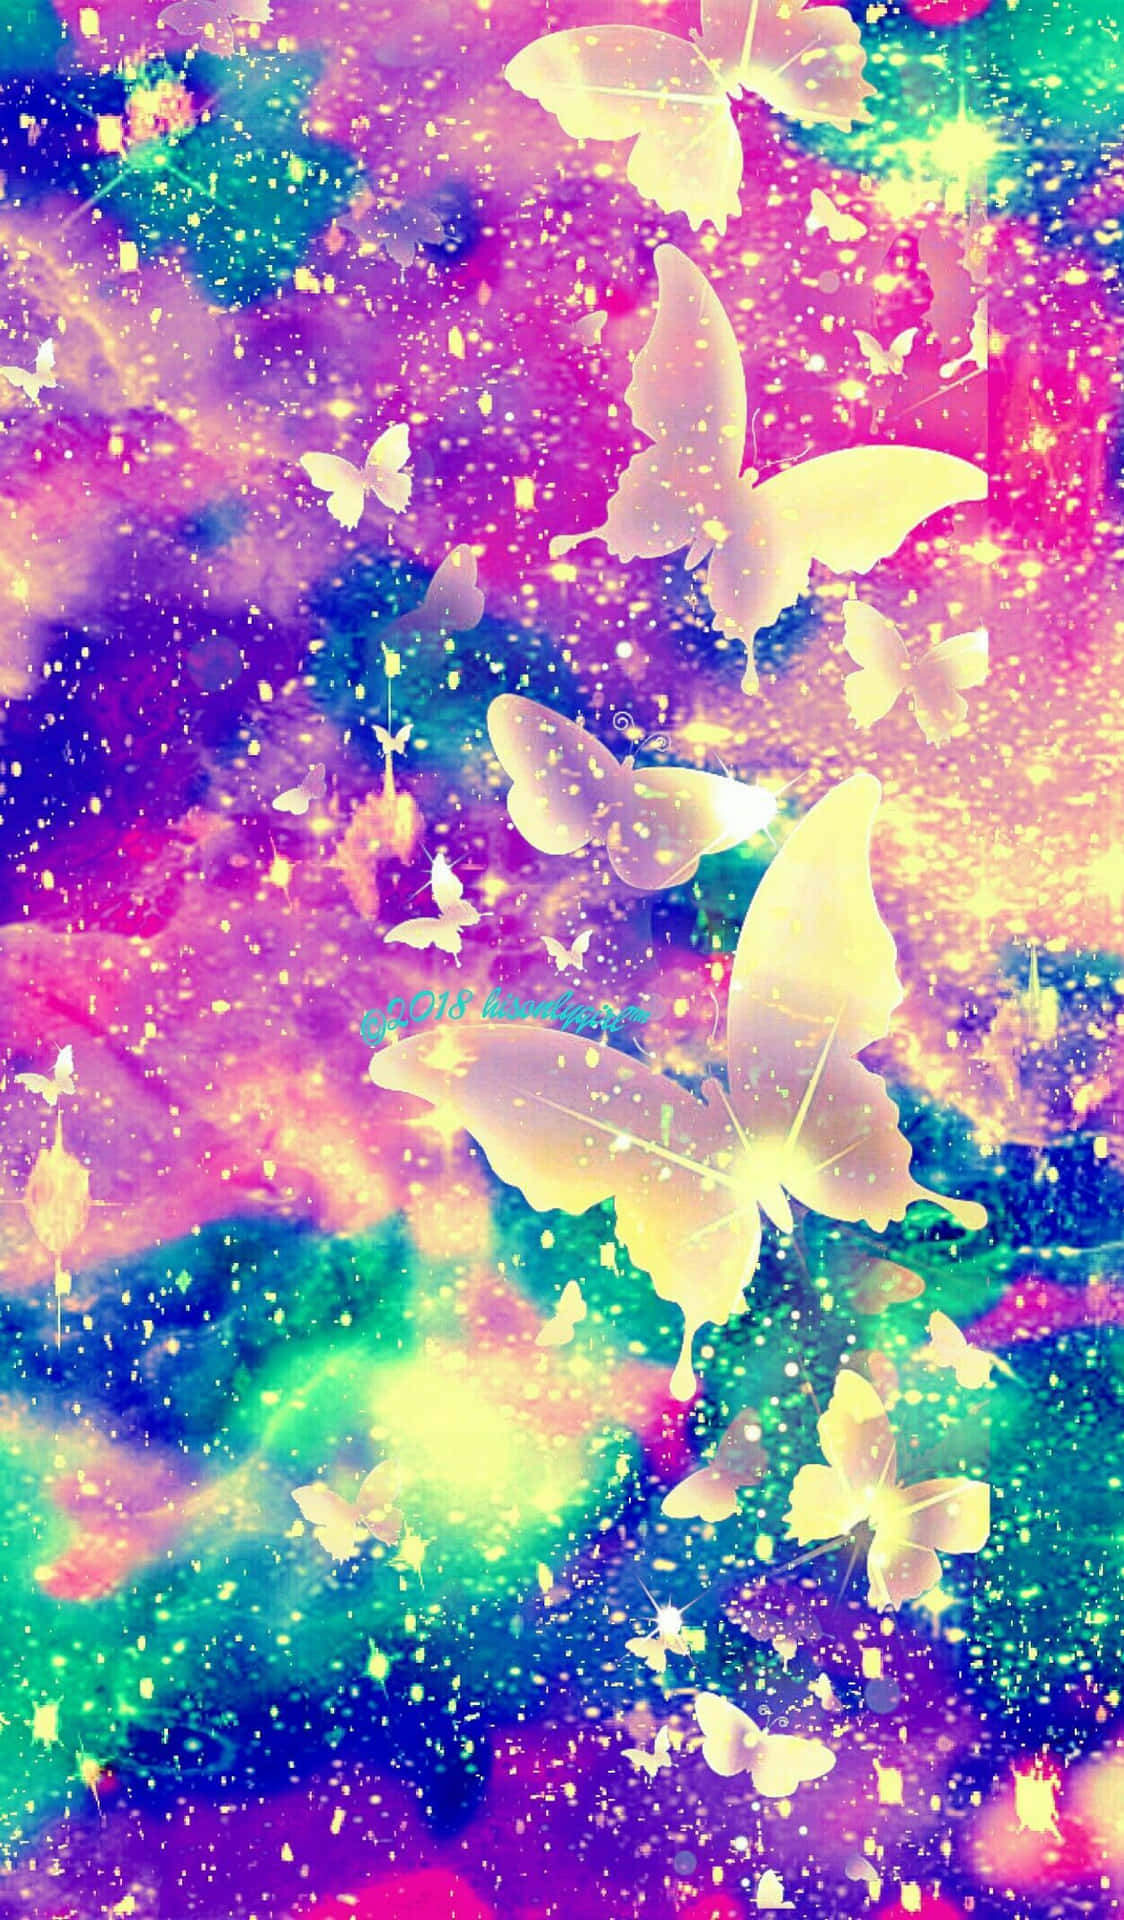 Unagalaxia Colorida Con Mariposas Y Estrellas